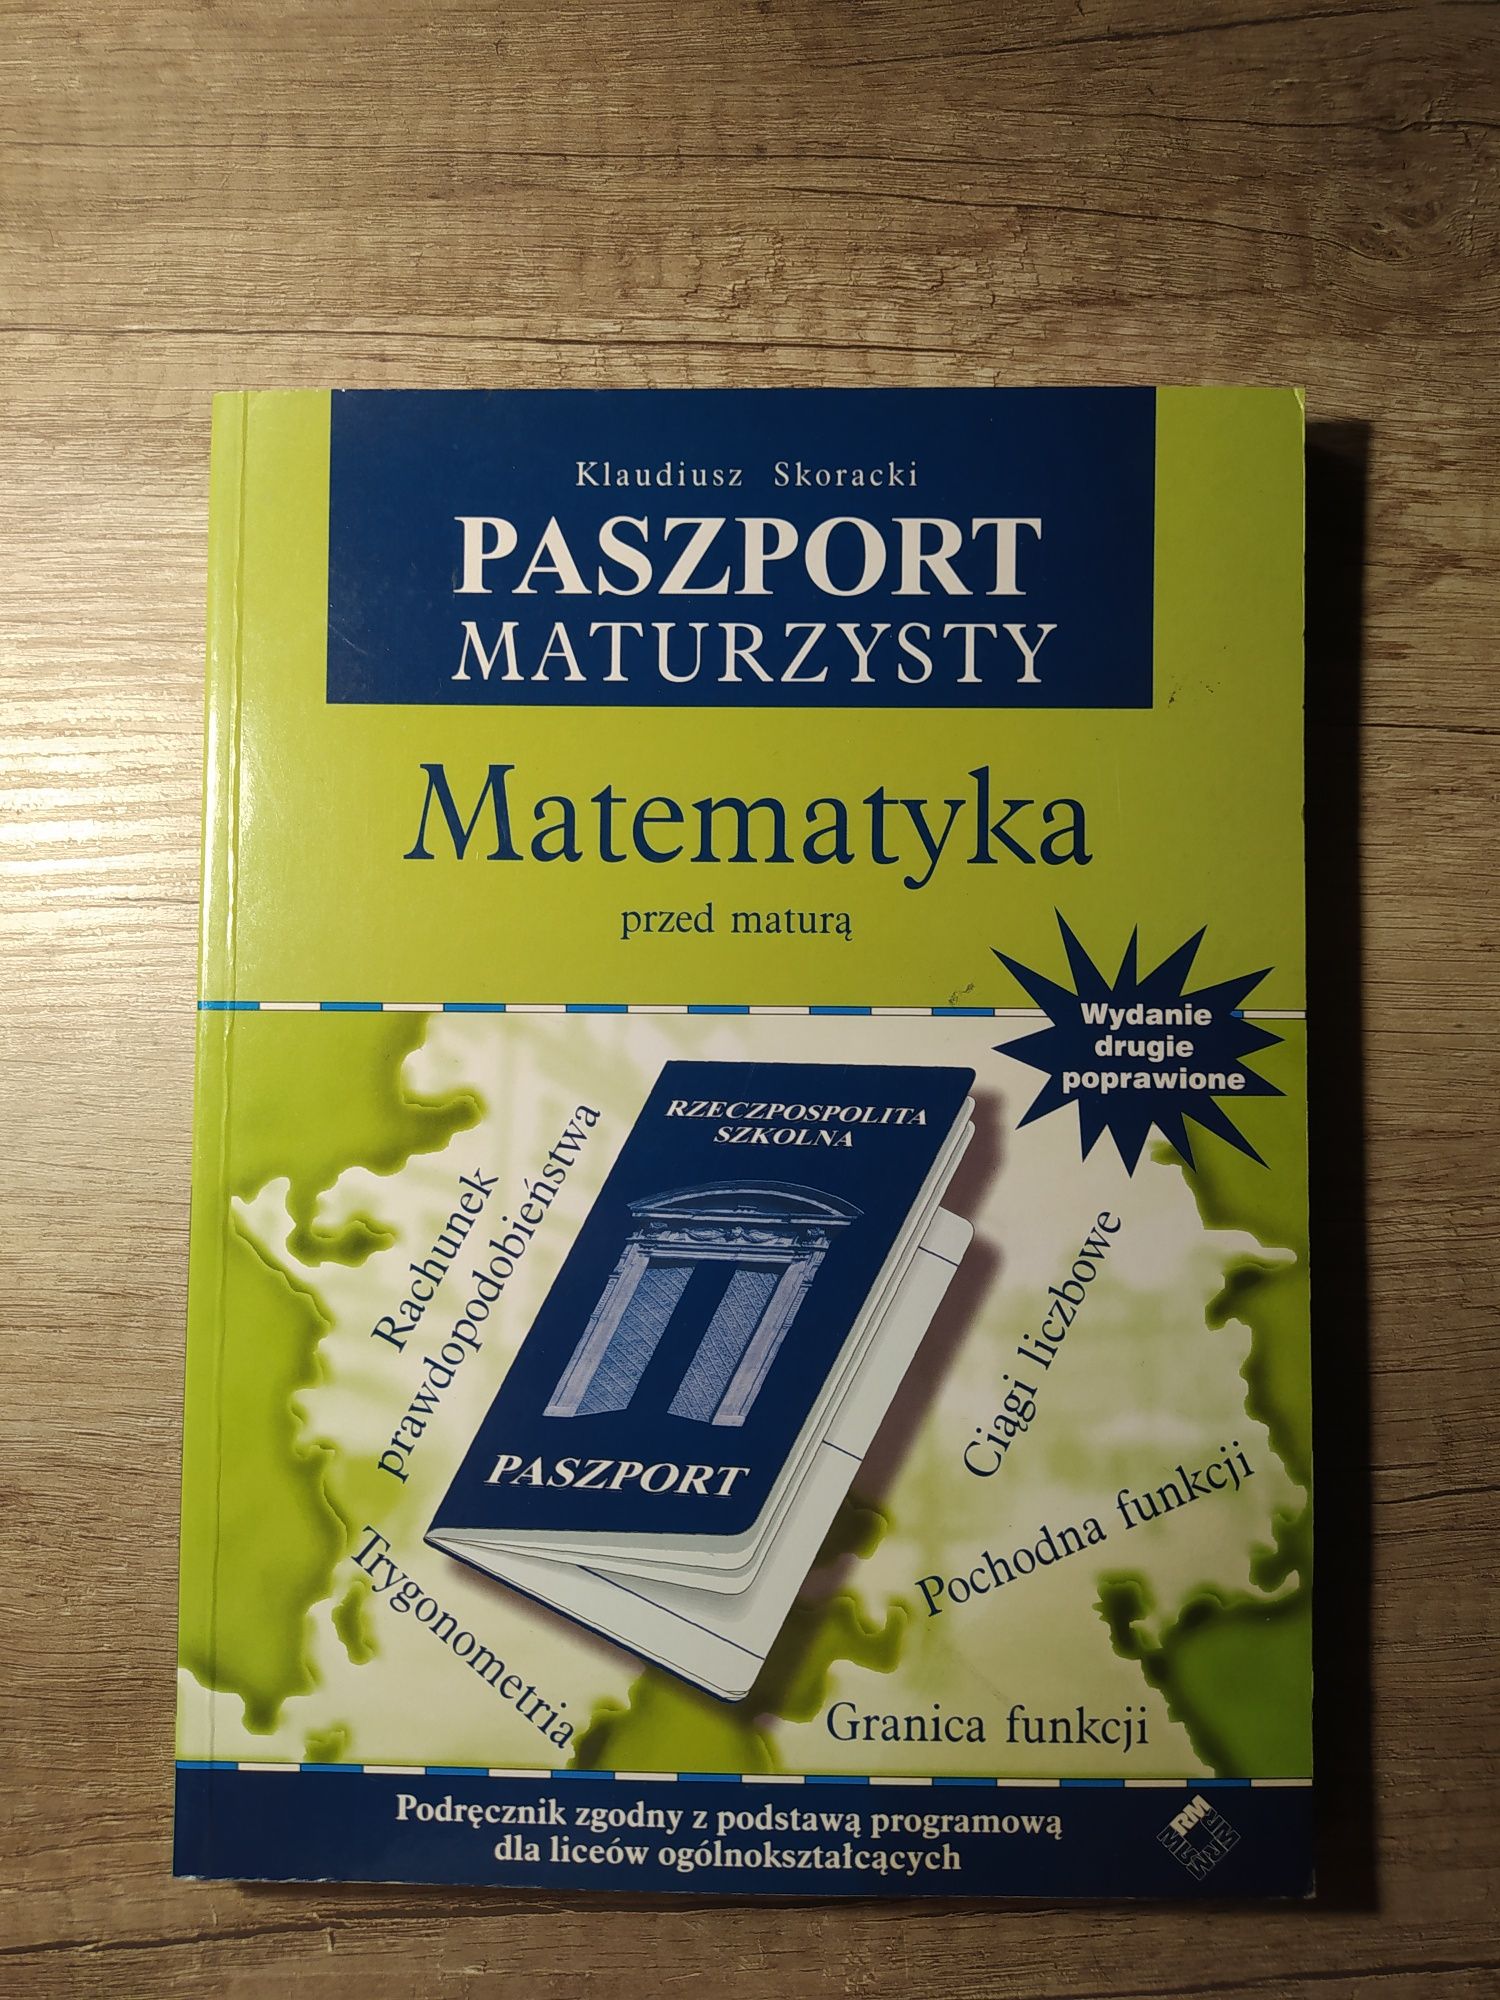 Paszport maturzysty-matematyka Klaudiusz Skoracki